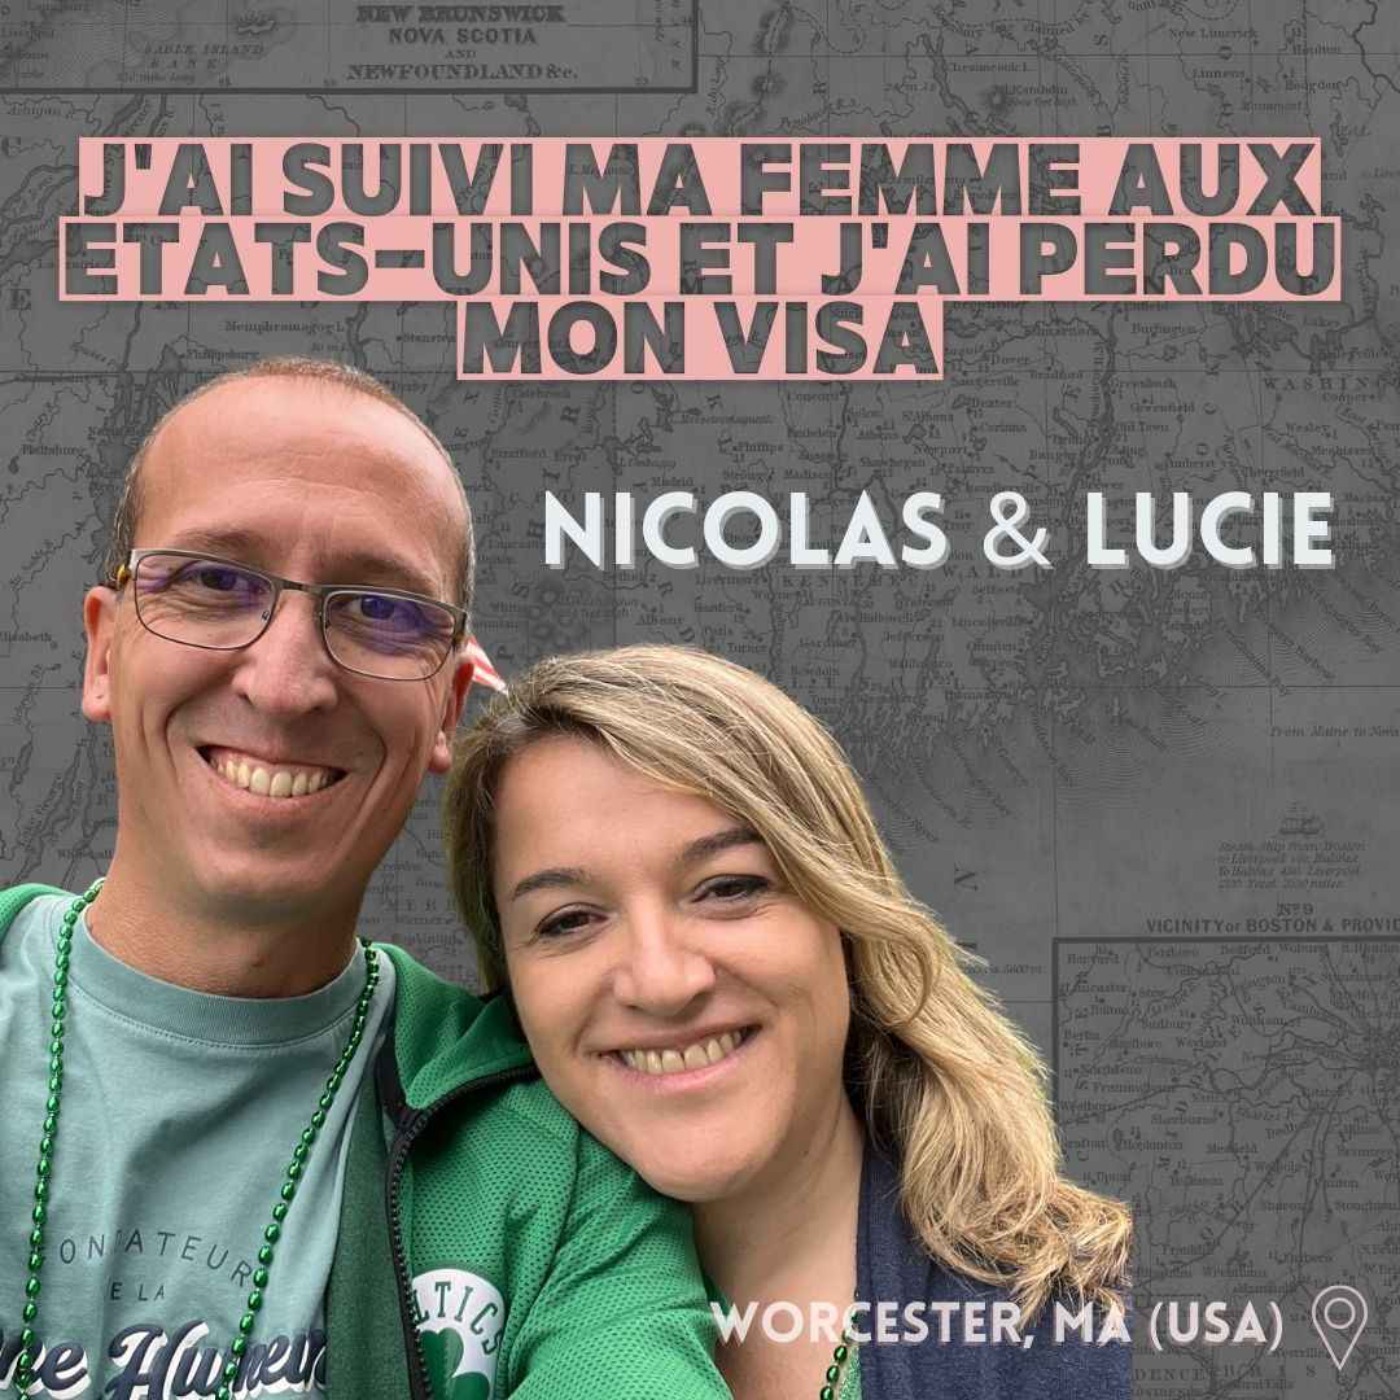 Nicolas & Lucie  (Worcester, MA) : ≪J'ai suivi ma femme aux Etats-Unis, et j'ai perdu mon visa≫